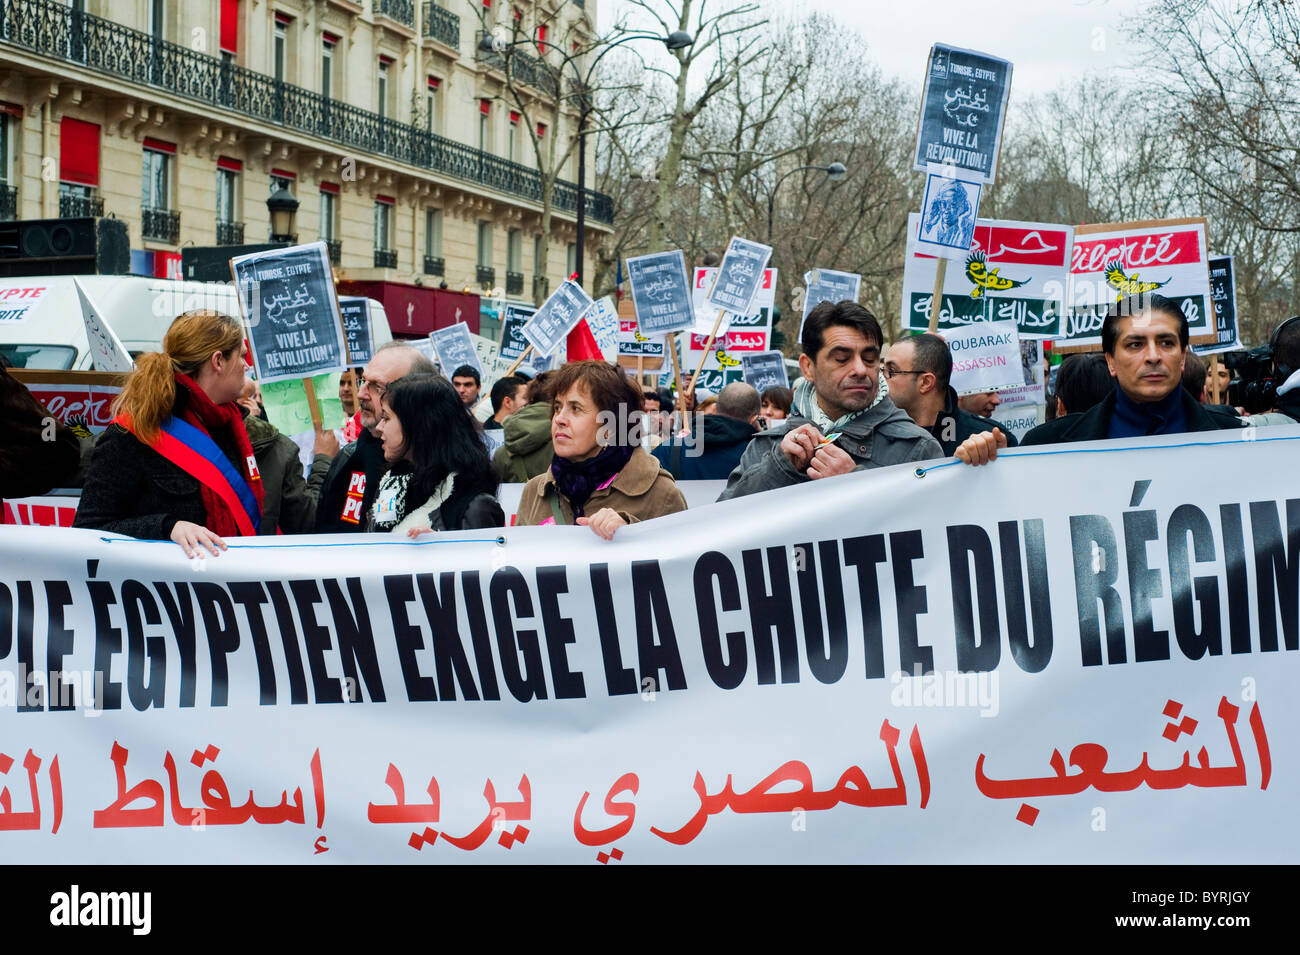 Paris, France, manifestants égyptiens protestant contre 'Hosni Mubarak', mouvement du Printemps arabe en marche, avec des panneaux de protestation dans la rue, 2011 Banque D'Images